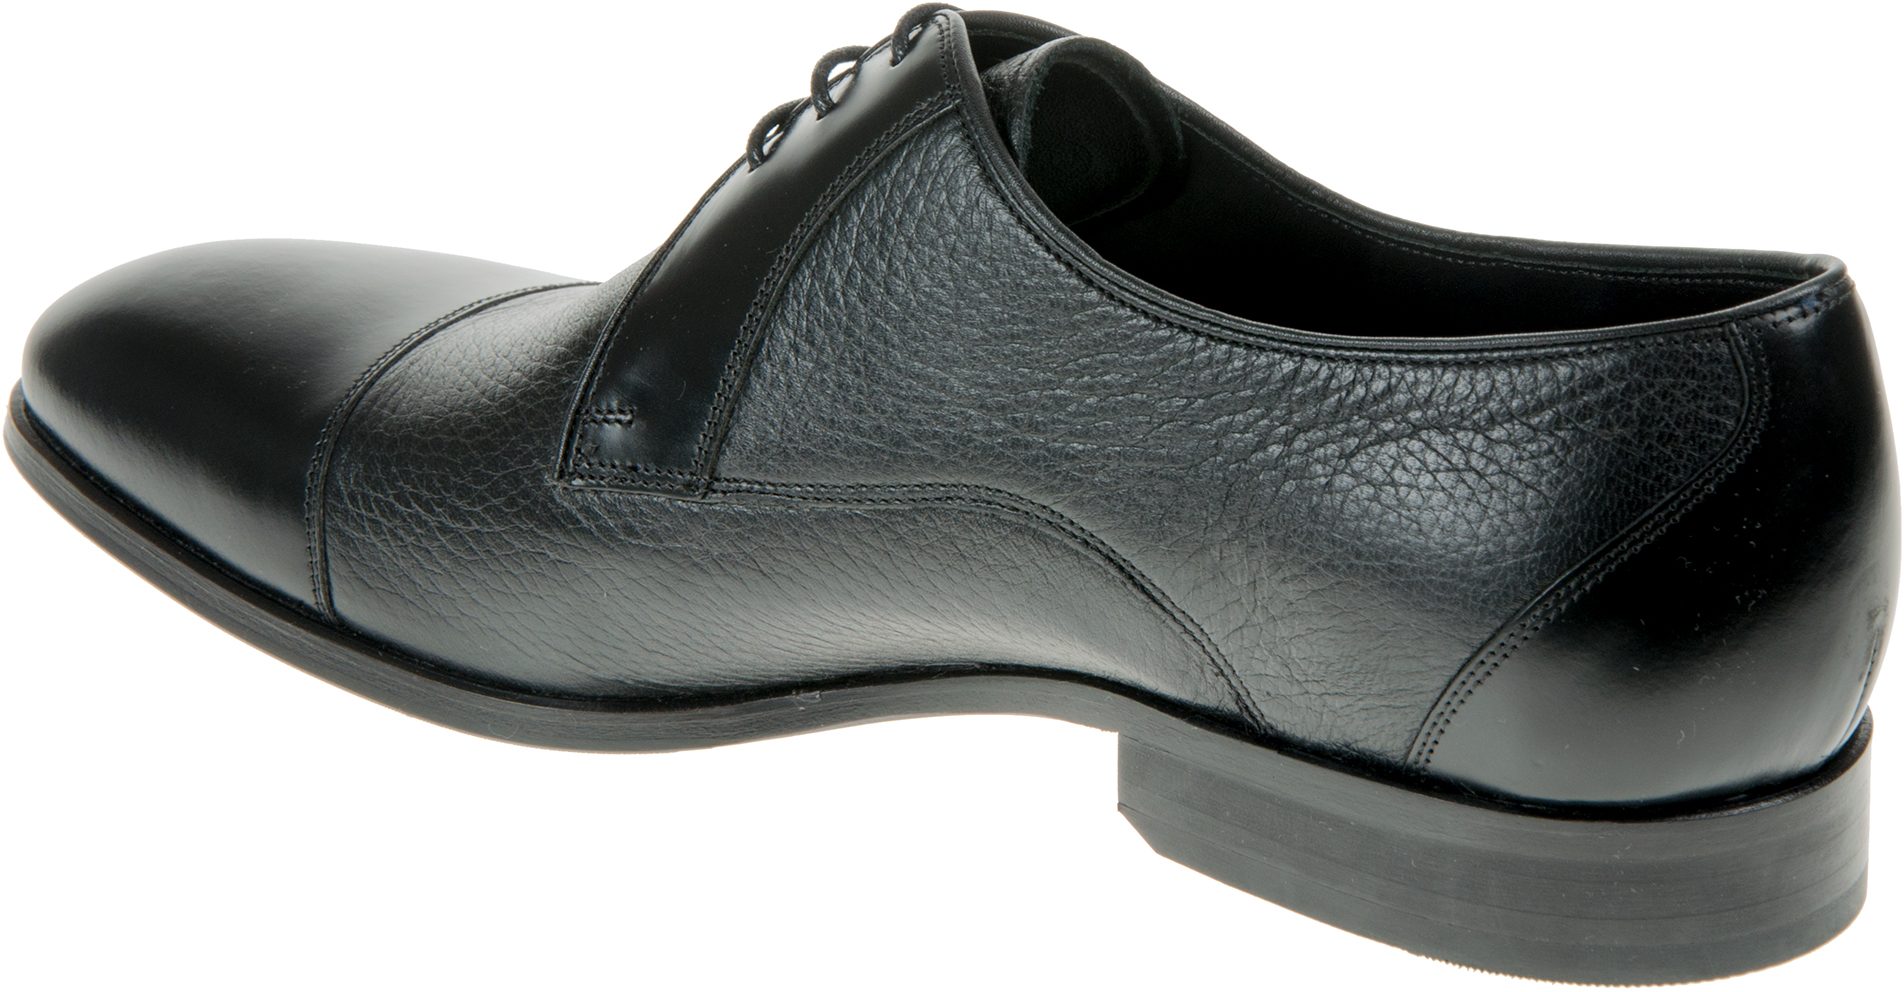 Barker Fred Black Deerskin / Black Hi Shine 4170 17 G - Formal Shoes ...